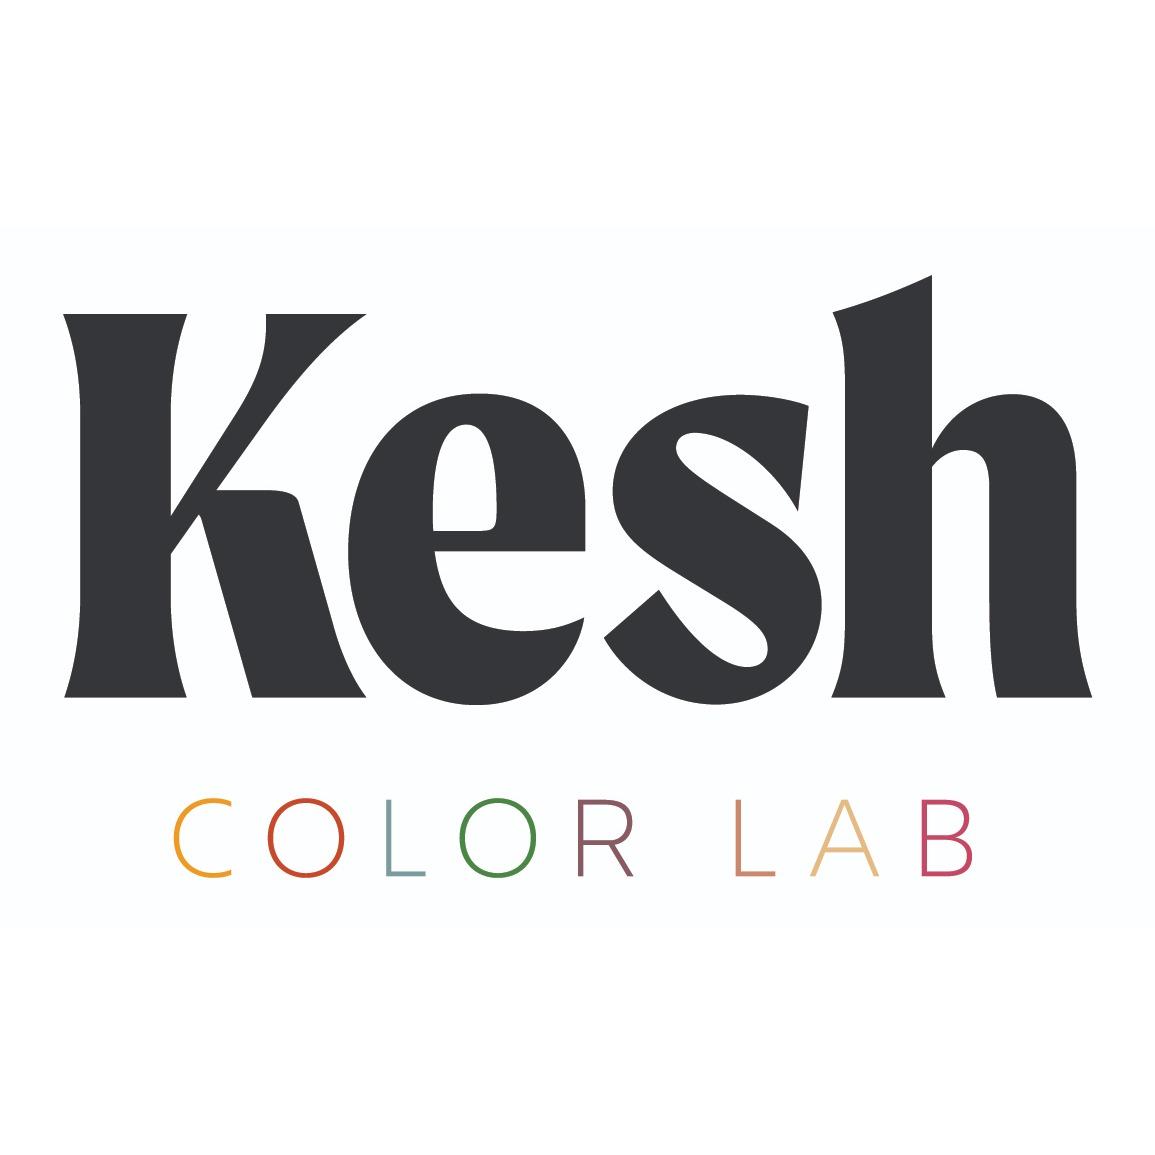 Color darkroom. Салон красоты Color Lab. Юджин логотип. Colorlab. Lab Colour.